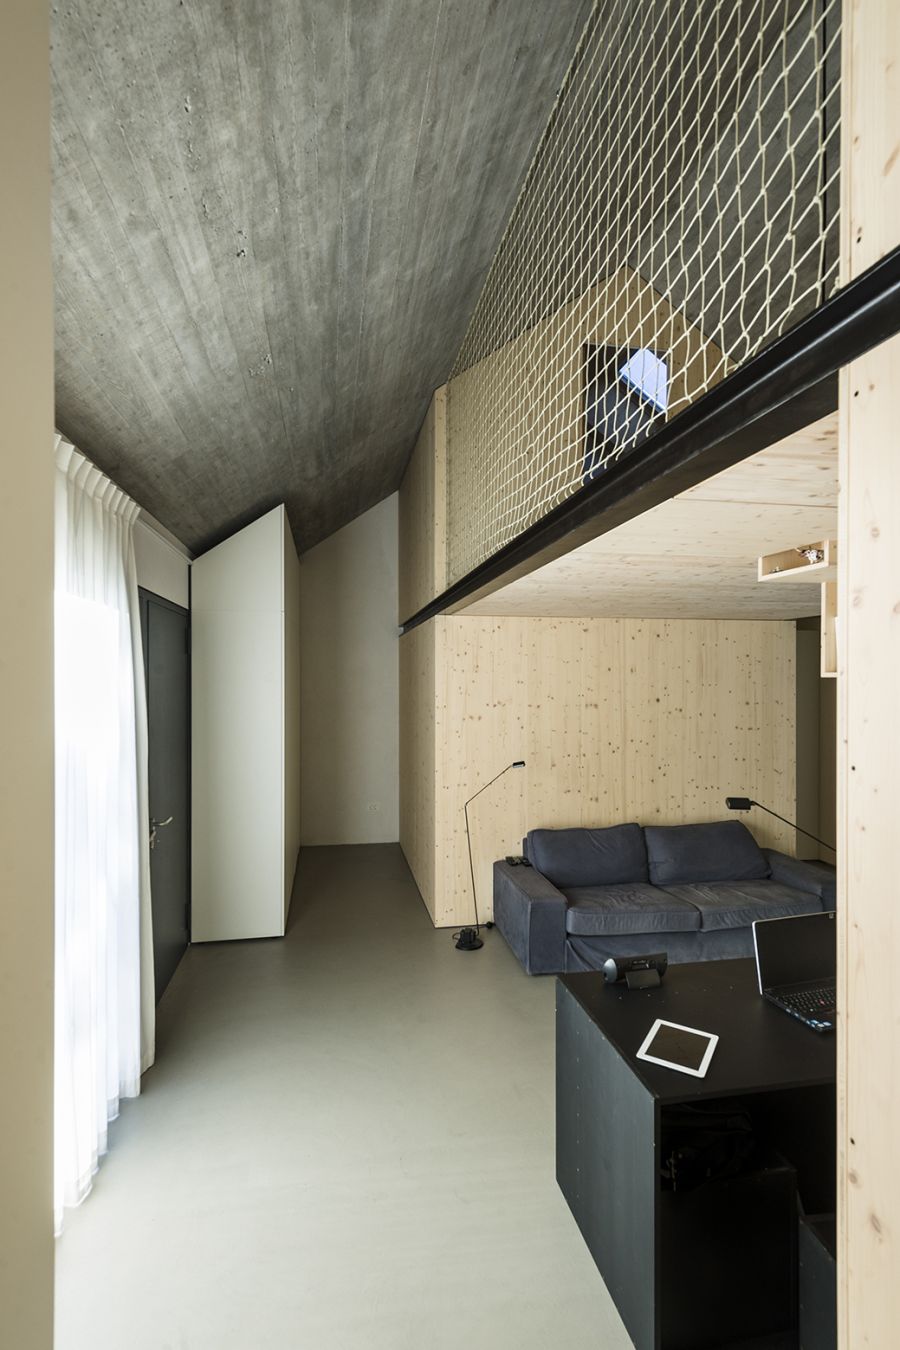 La arquitectura moderna y tradicional eslovena confluyen en esta casa compacta 21